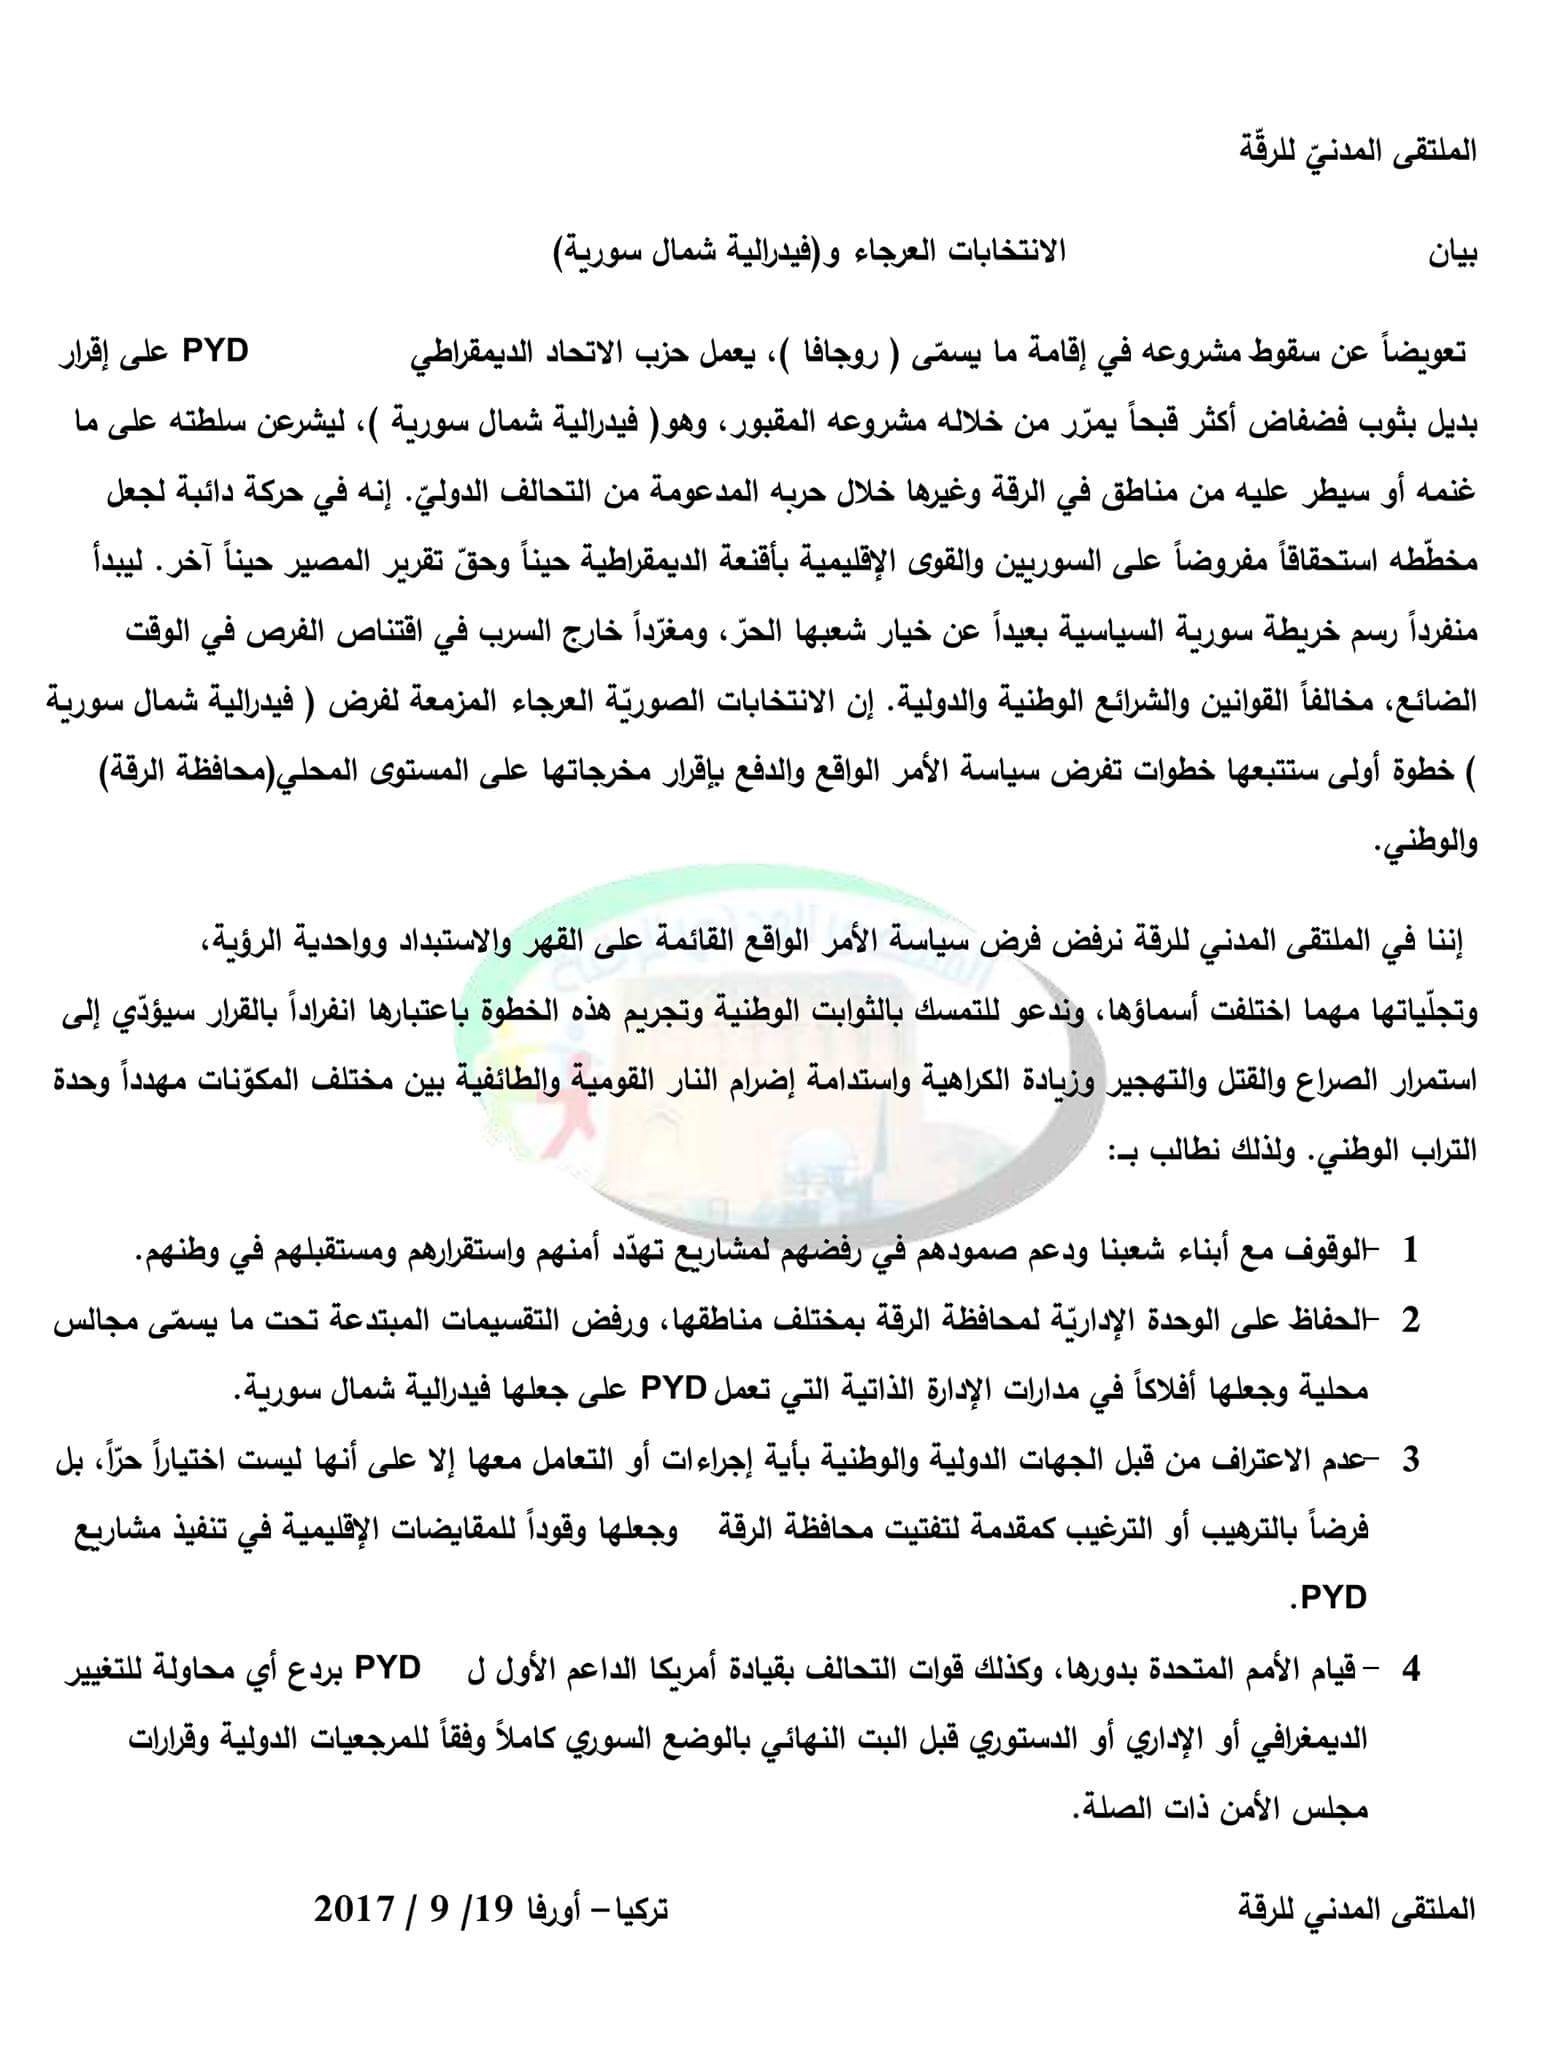 الملتقى المدني للرقة يرفض “الفدرالية” في شمال سورية (بيان).